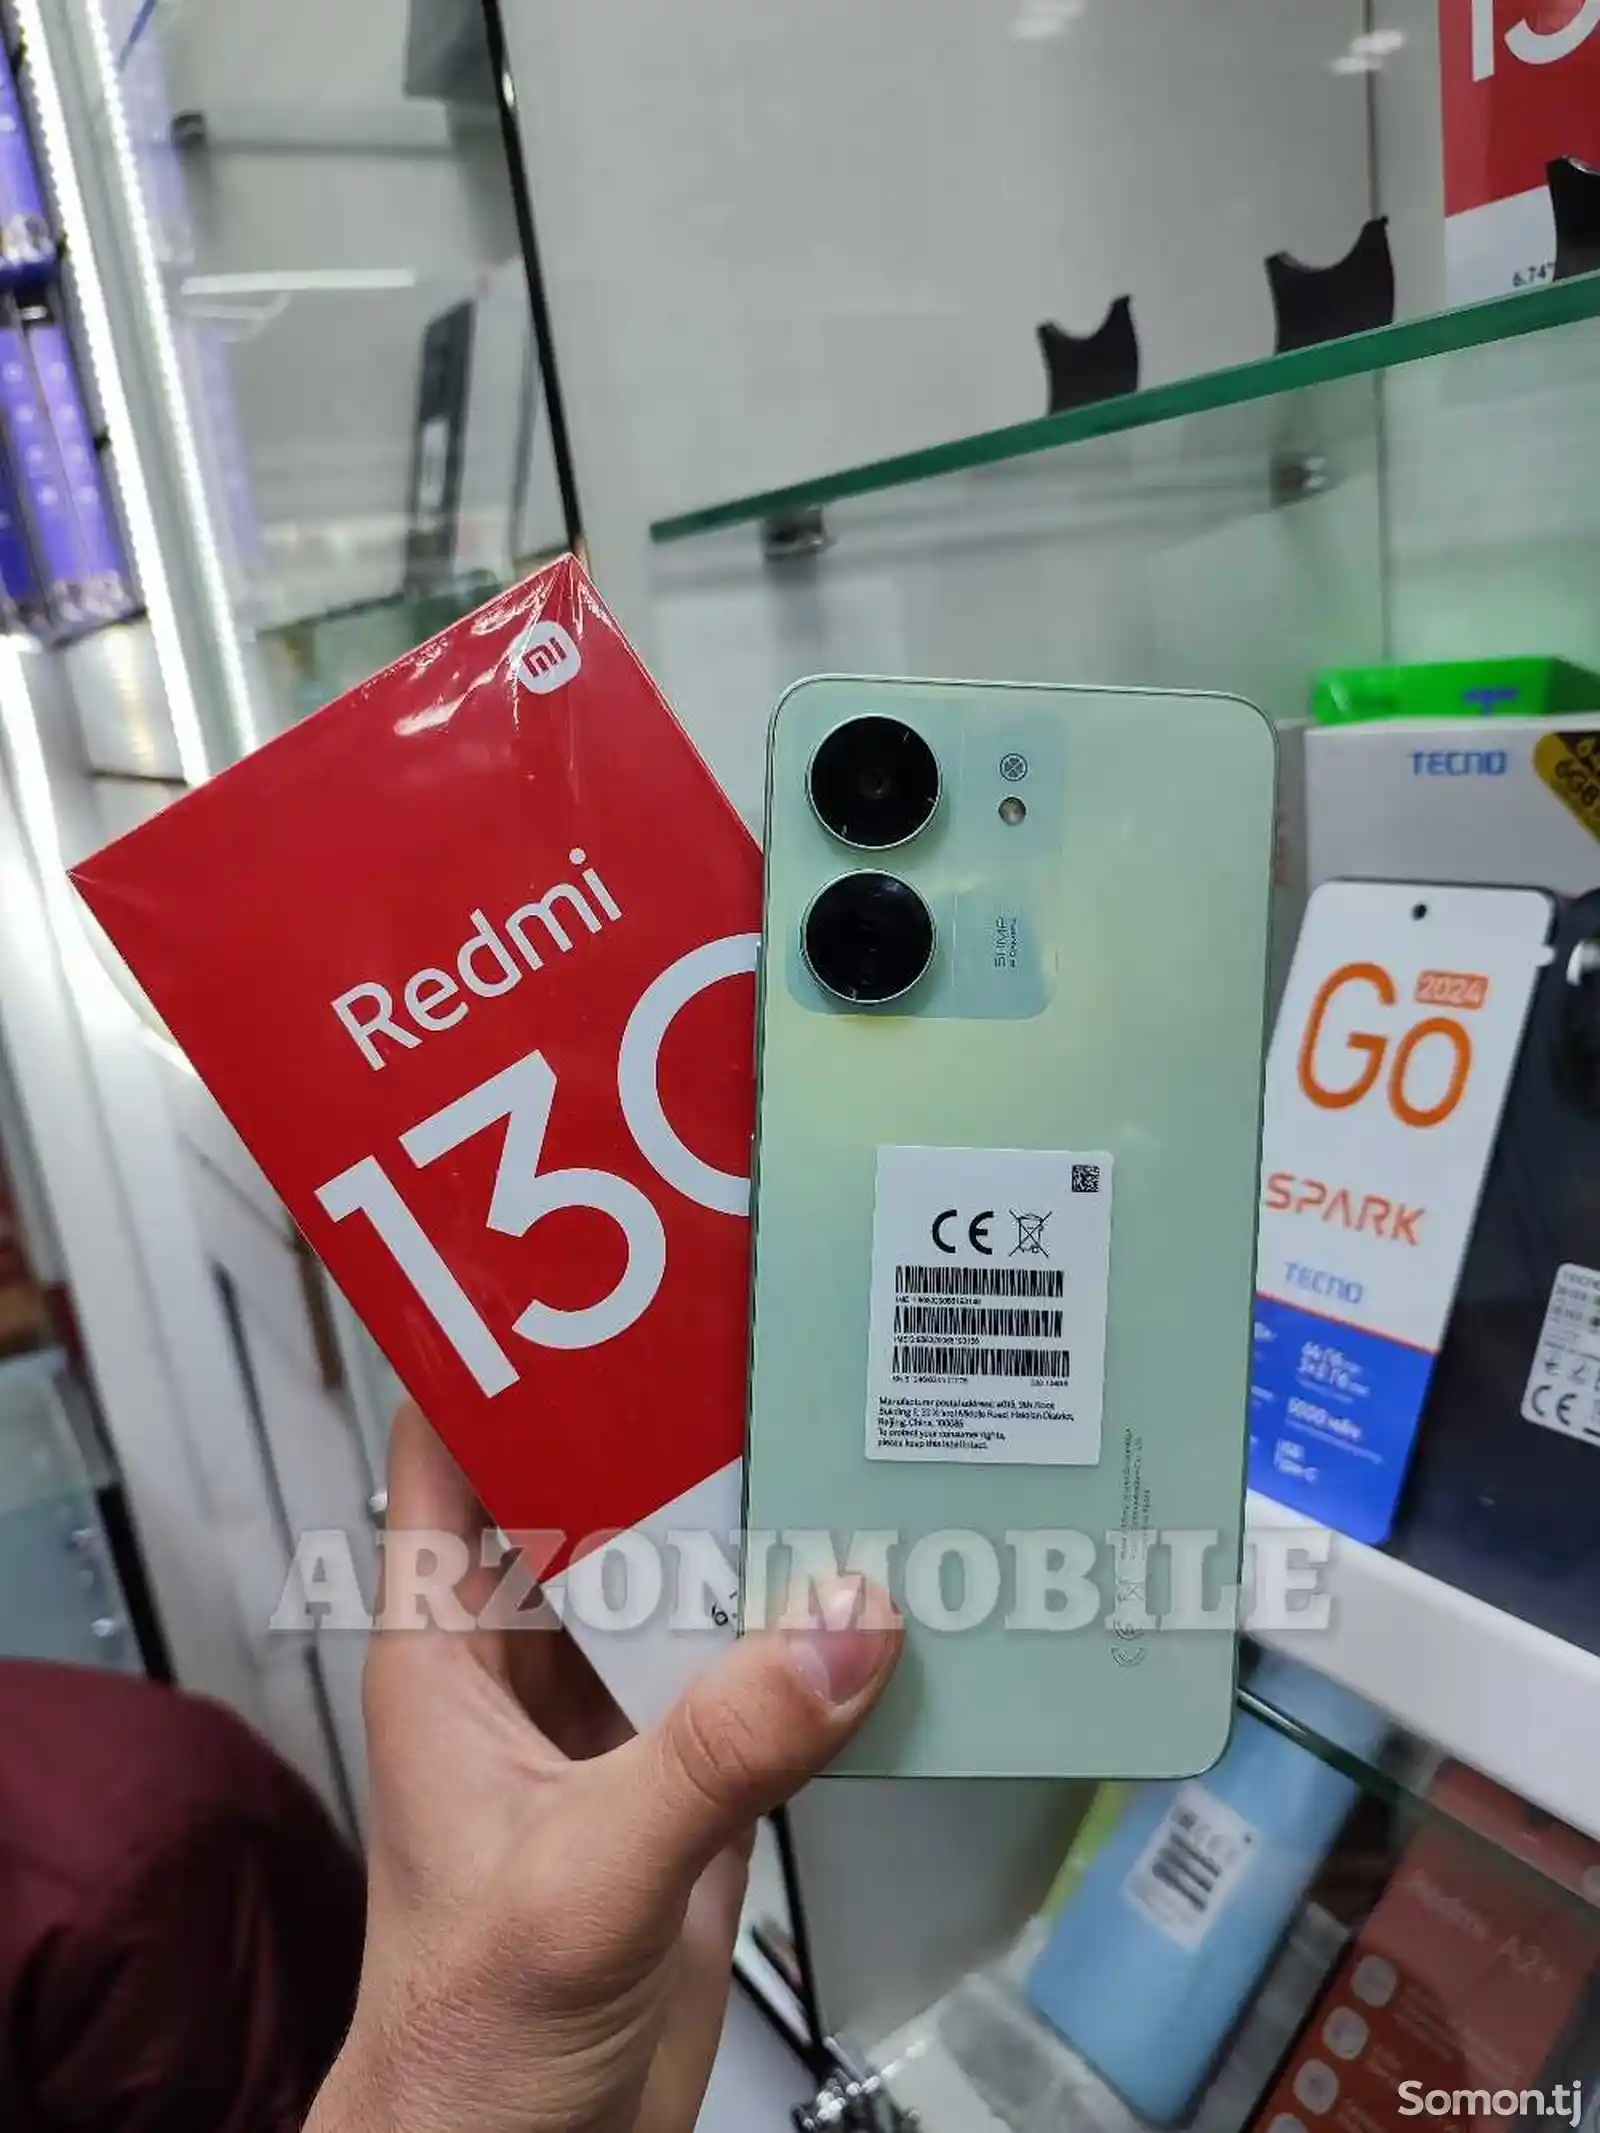 Xiaomi Redmi 13C 6/128Gb-2